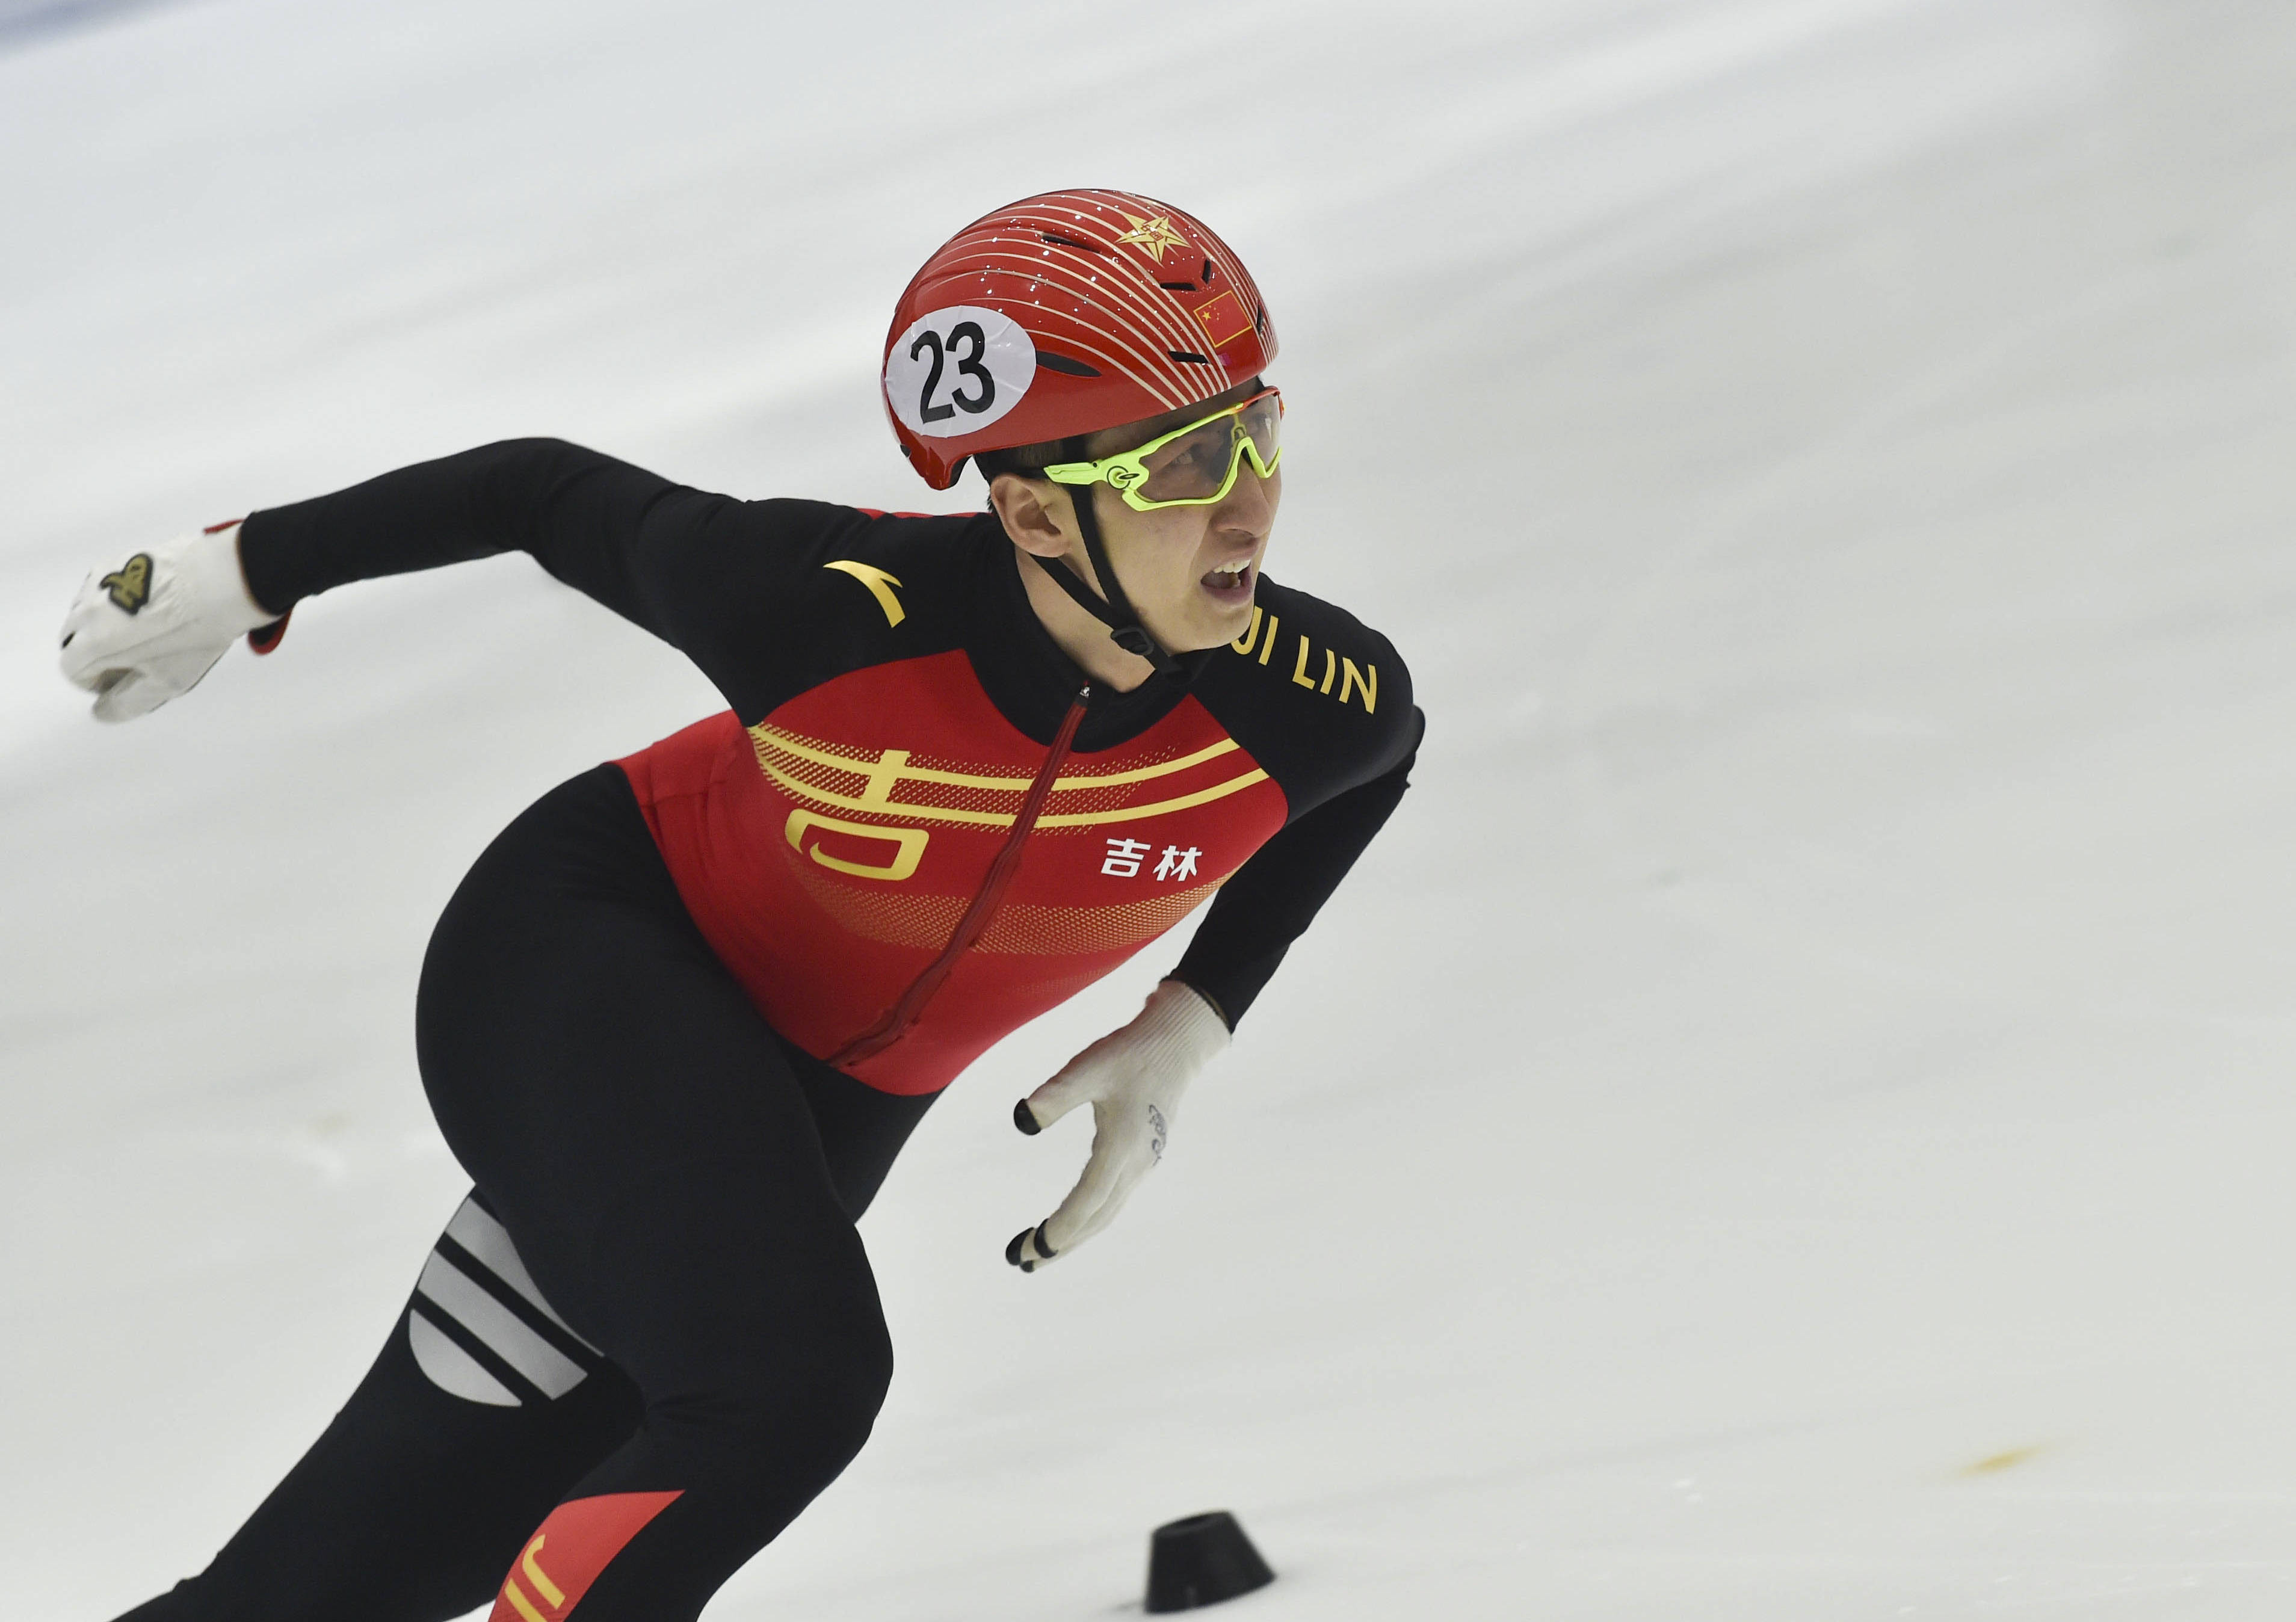 短道速滑——全国冠军赛:武大靖夺得男子1500米冠军